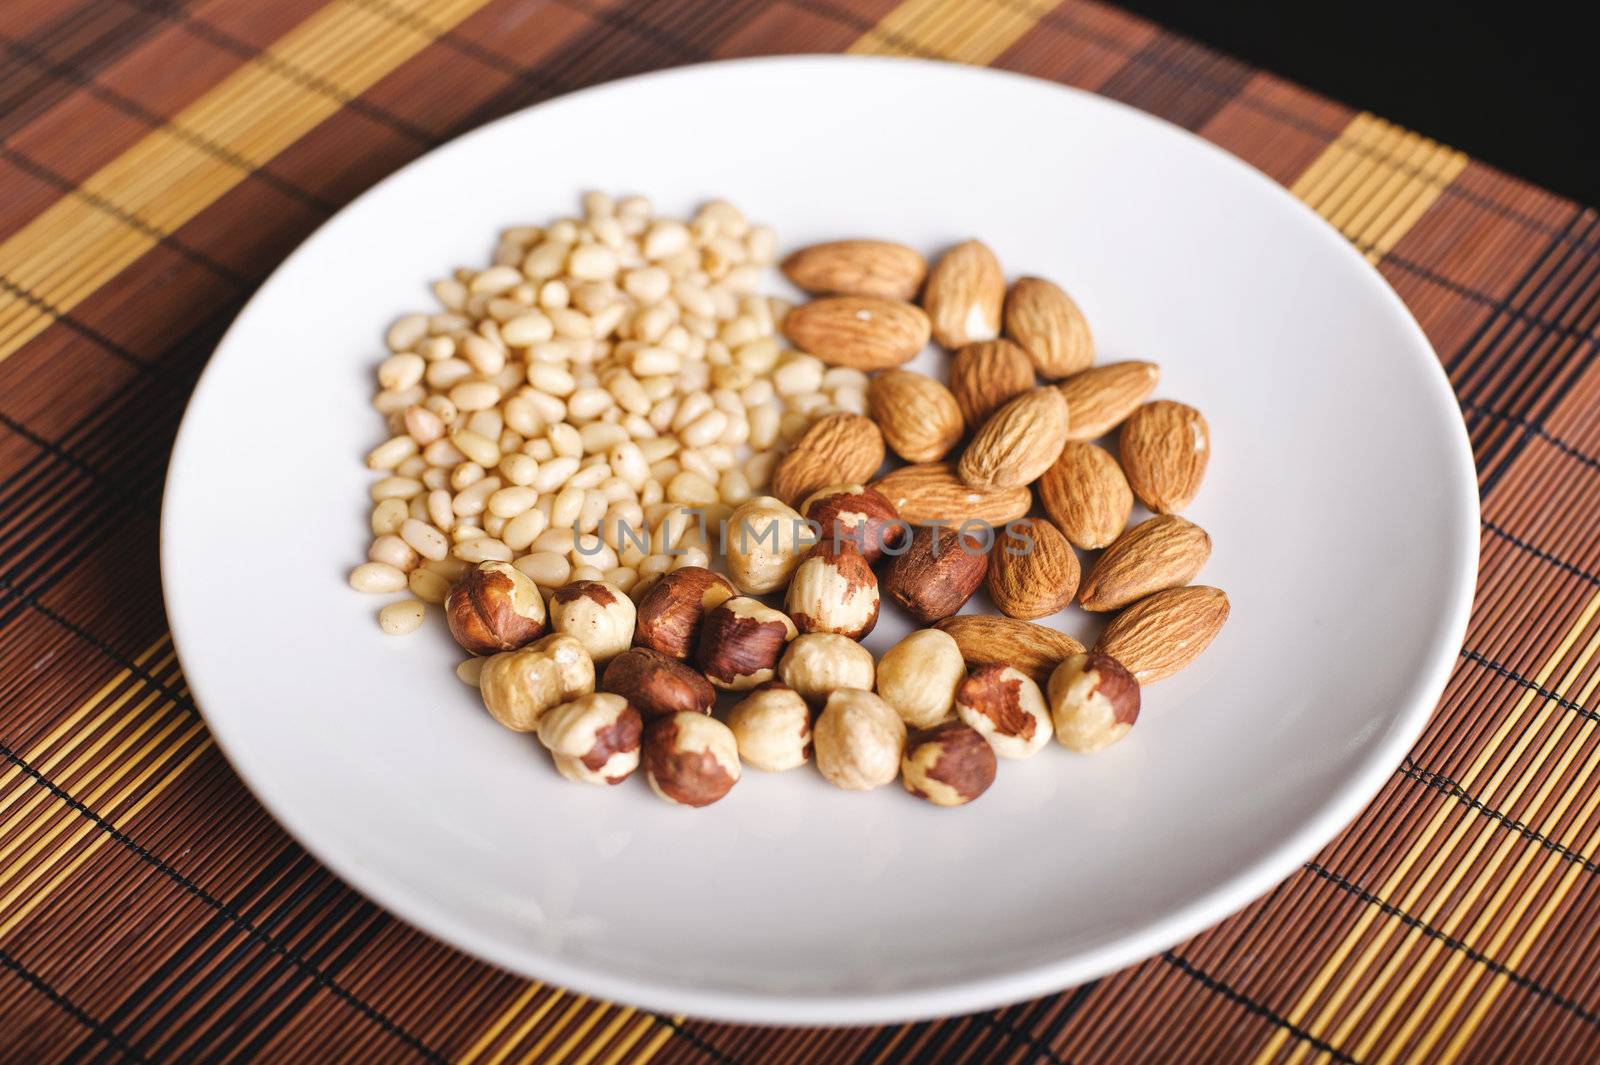 Mixed nuts by shivanetua